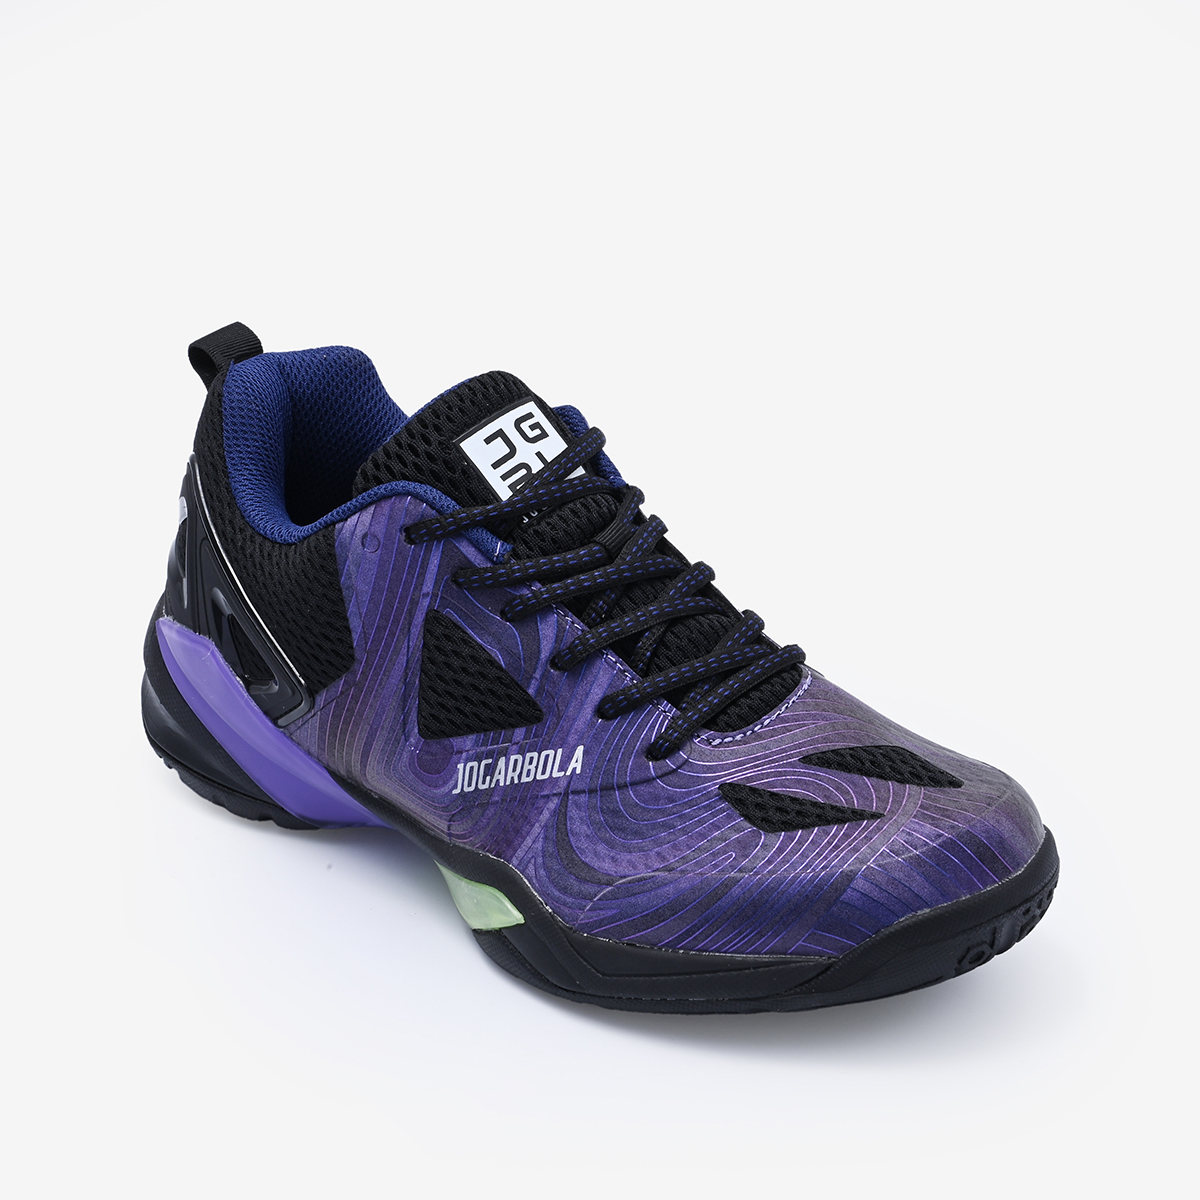 Giày Cầu Lông Động Lực Jogarbola "Purple" JG-050923-03 - Hàng Chính Hãng